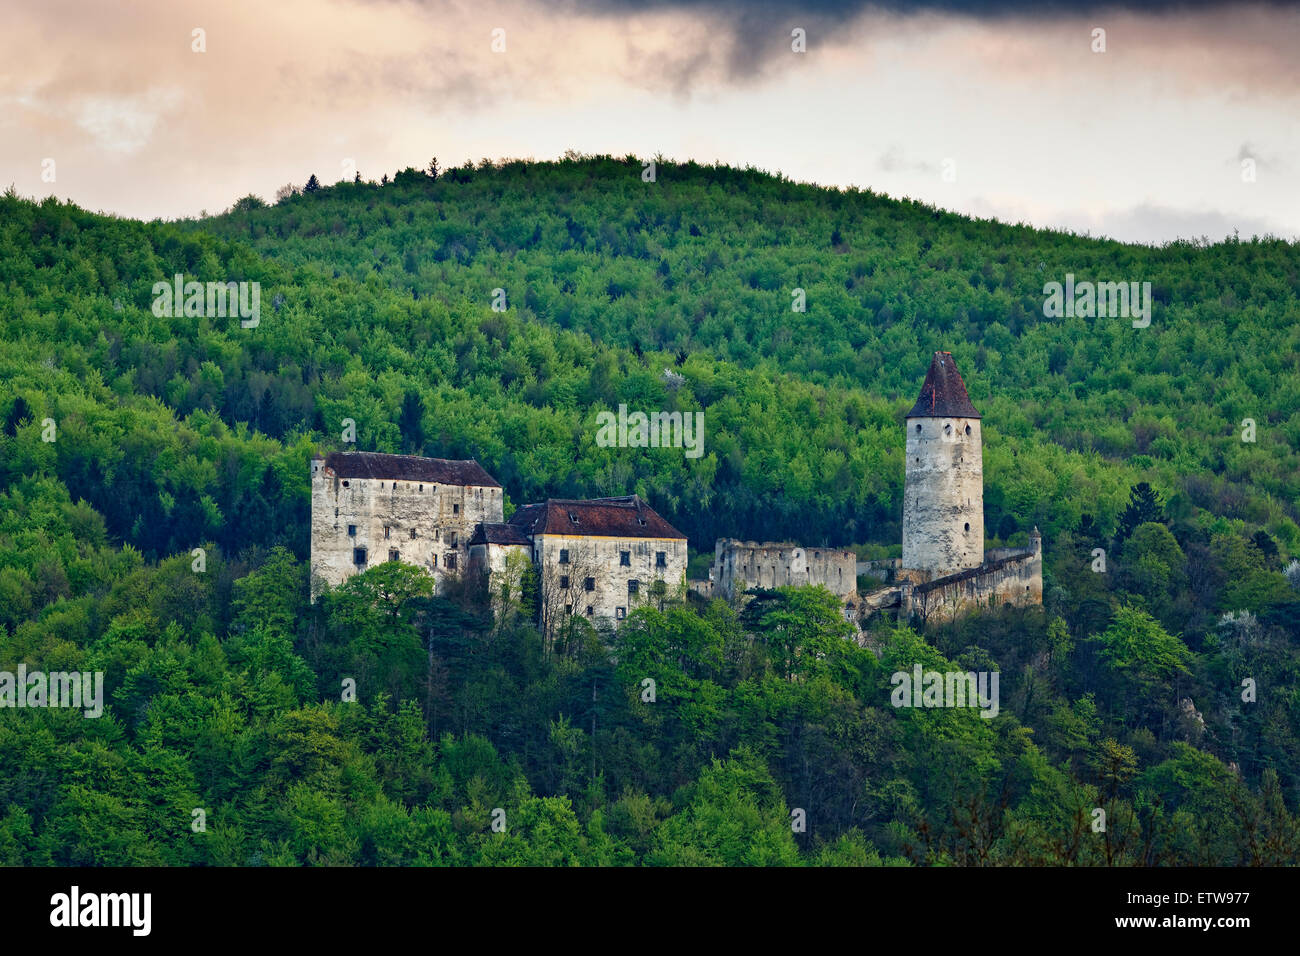 Austria, Lower Austria, Bucklige Welt, Burg Seebenstein Stock Photo